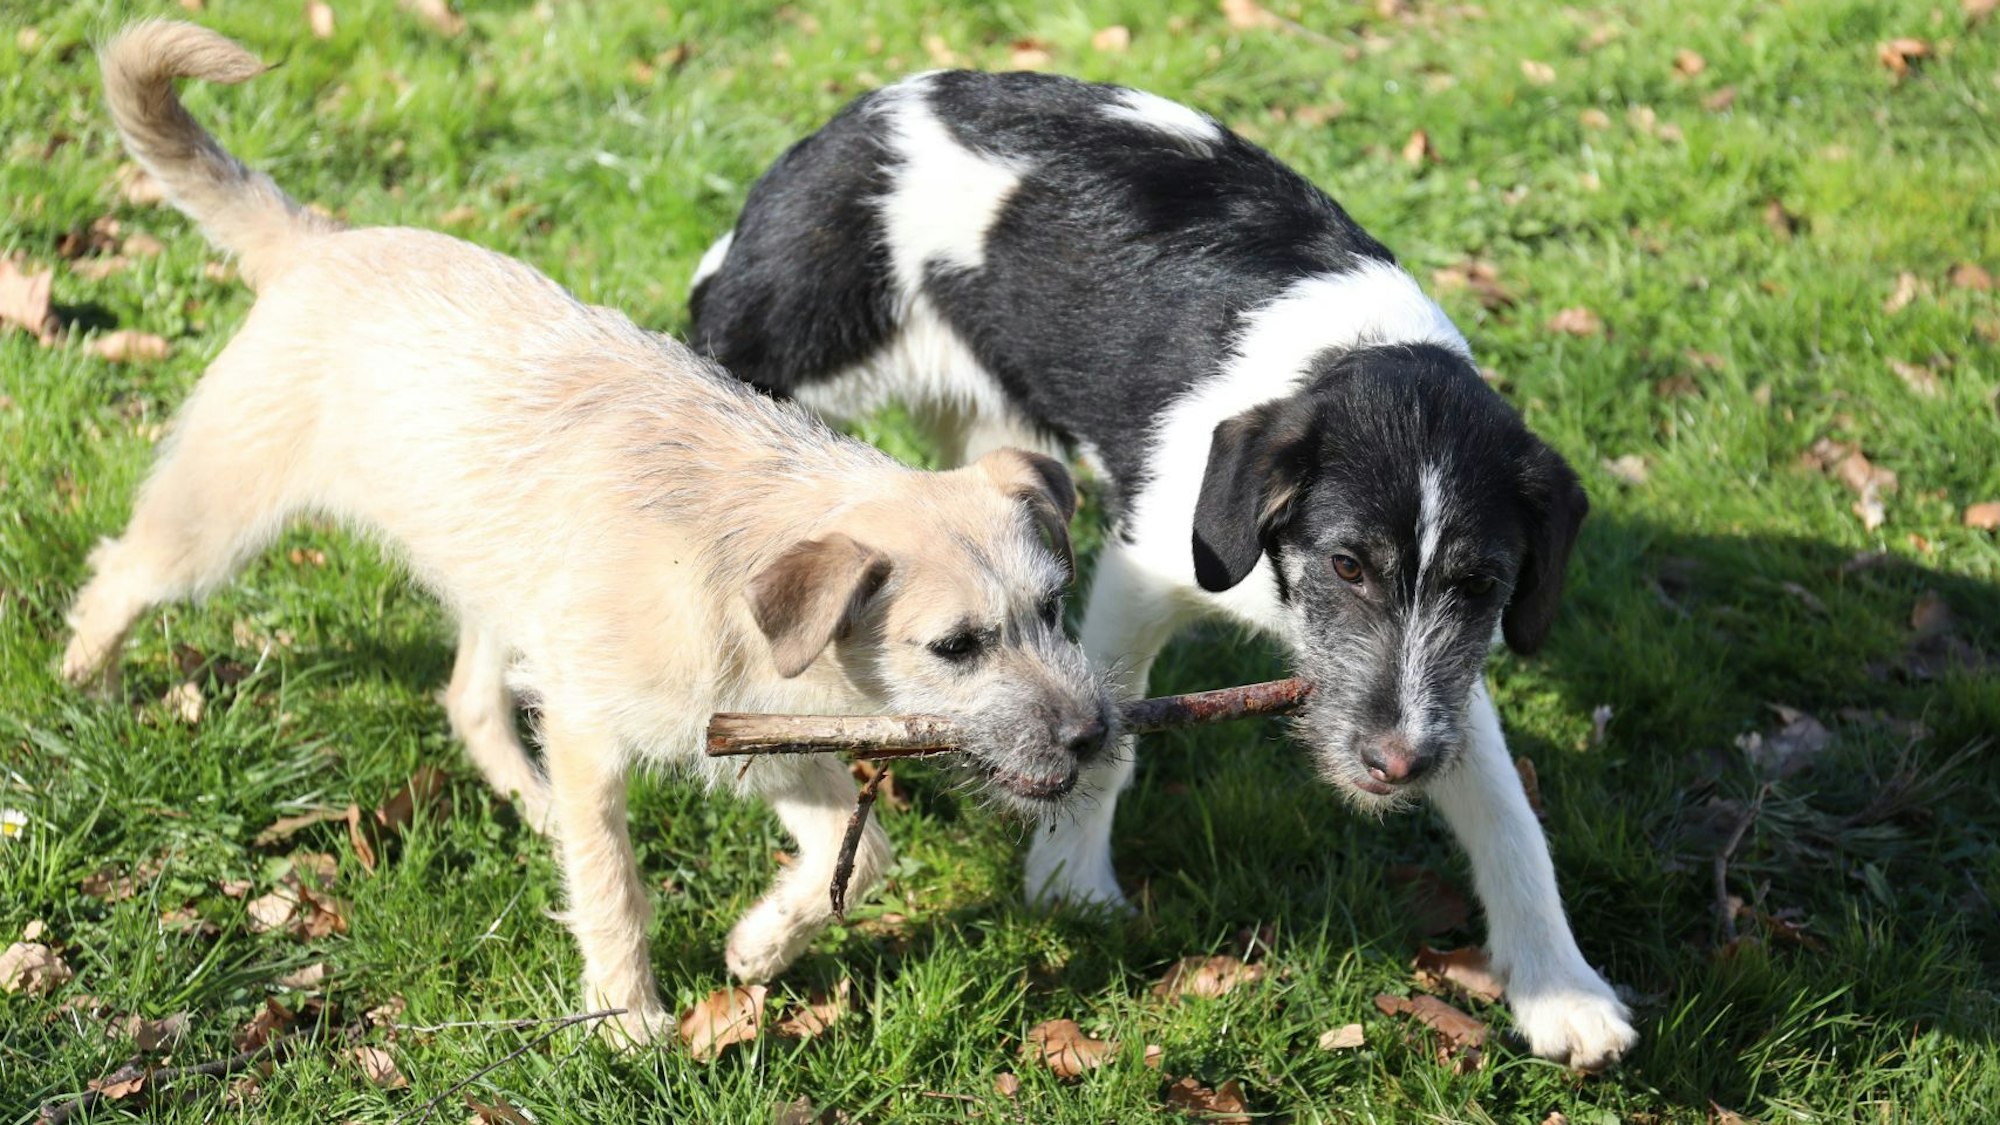 Zwei junge Hunde – der eine mit beigem, der andere mit schwarz-weißem Fell – halten gemeinsam einen Ast in den Mäulern.